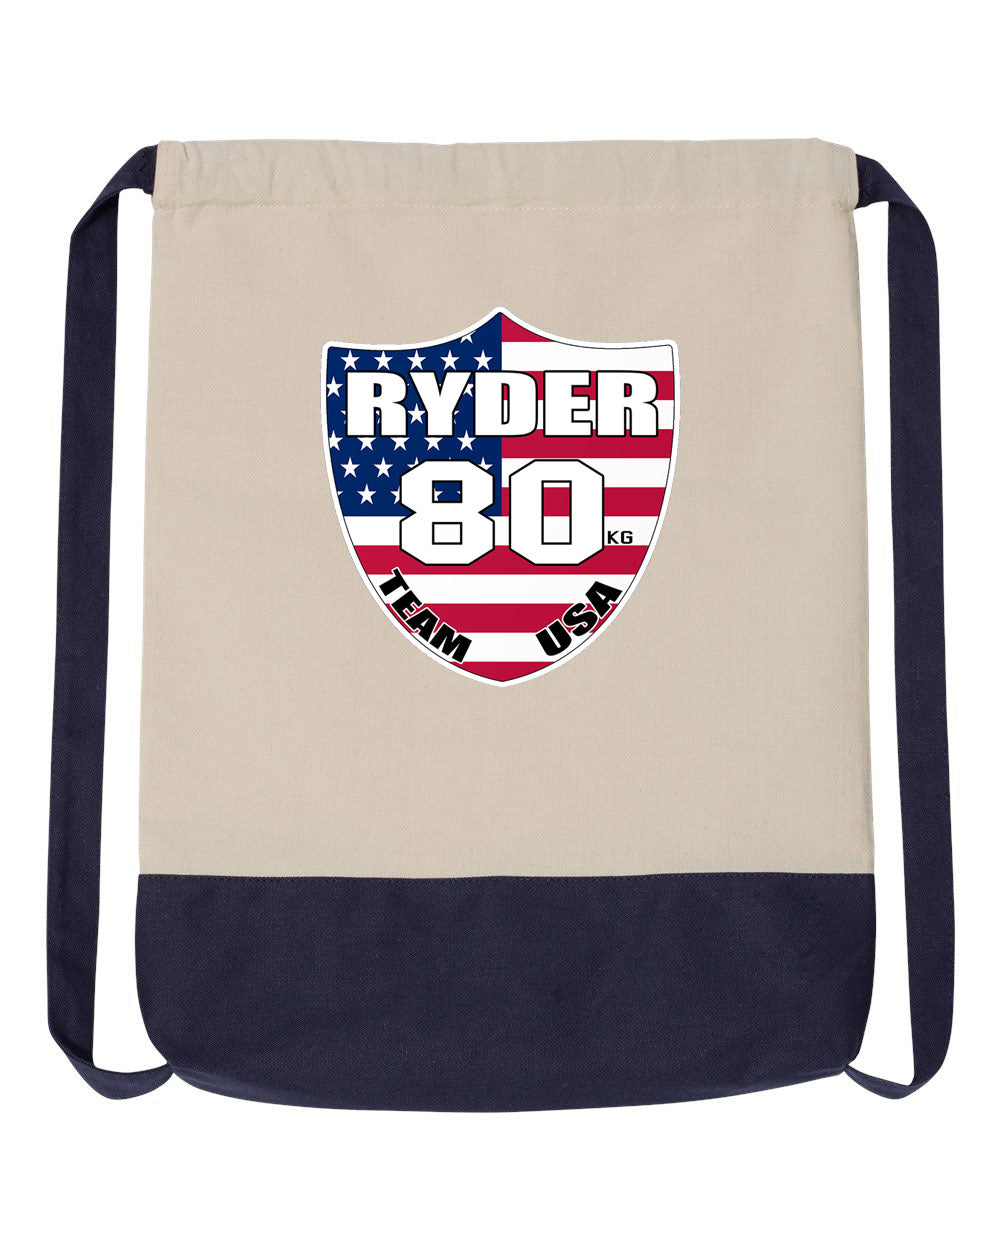 Ryder Wrestling Team USA Drawstring Bag